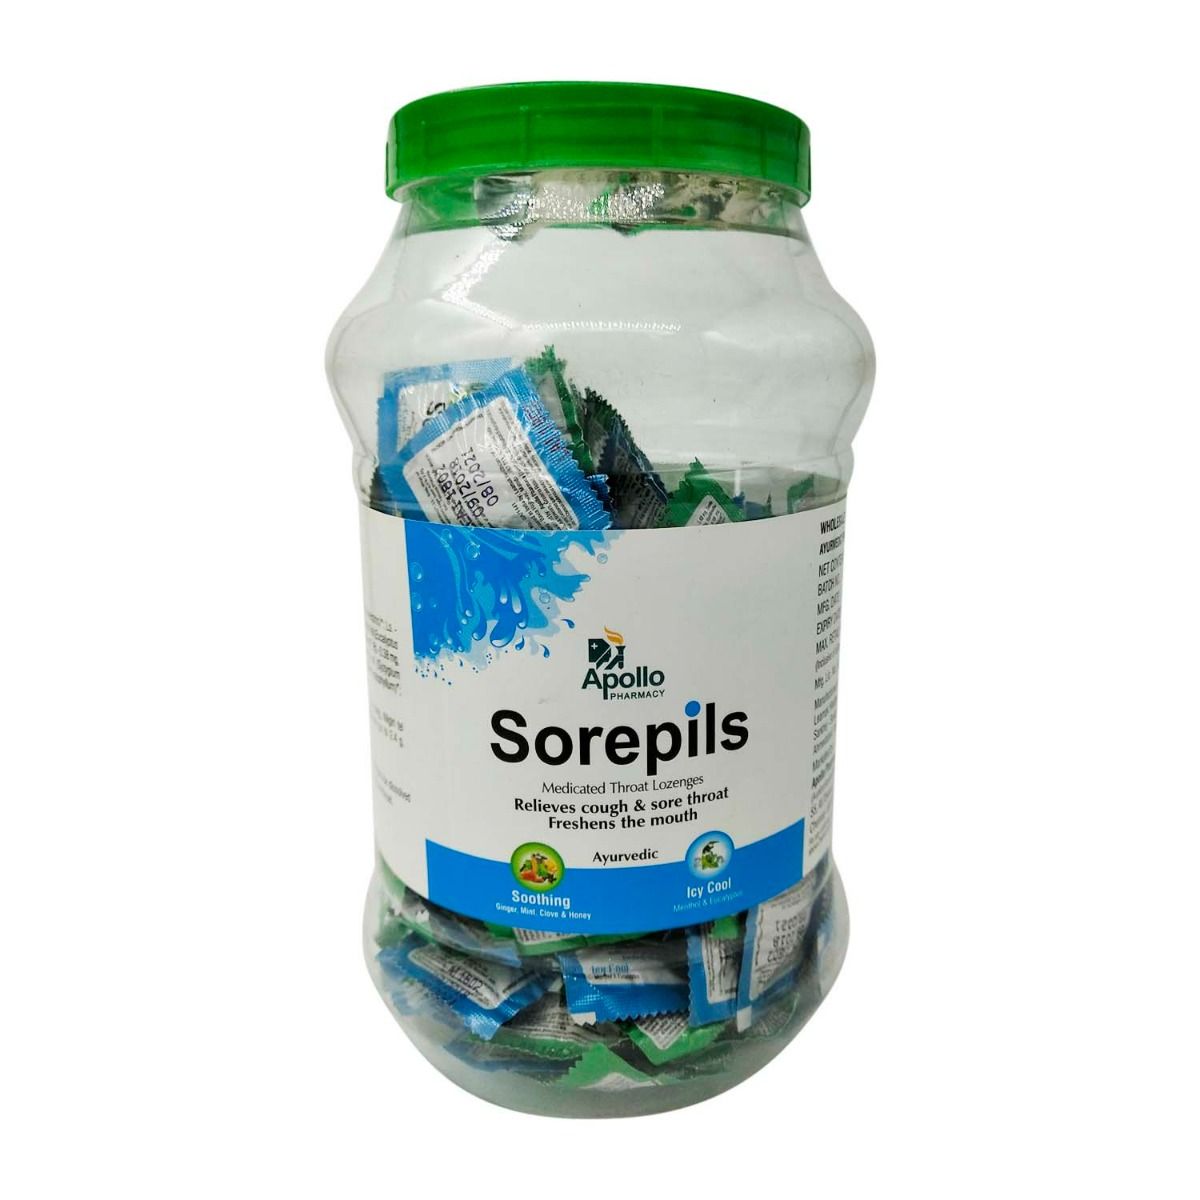 Apollo Pharmacy Sorepils, 1 Count, Pack of 1 